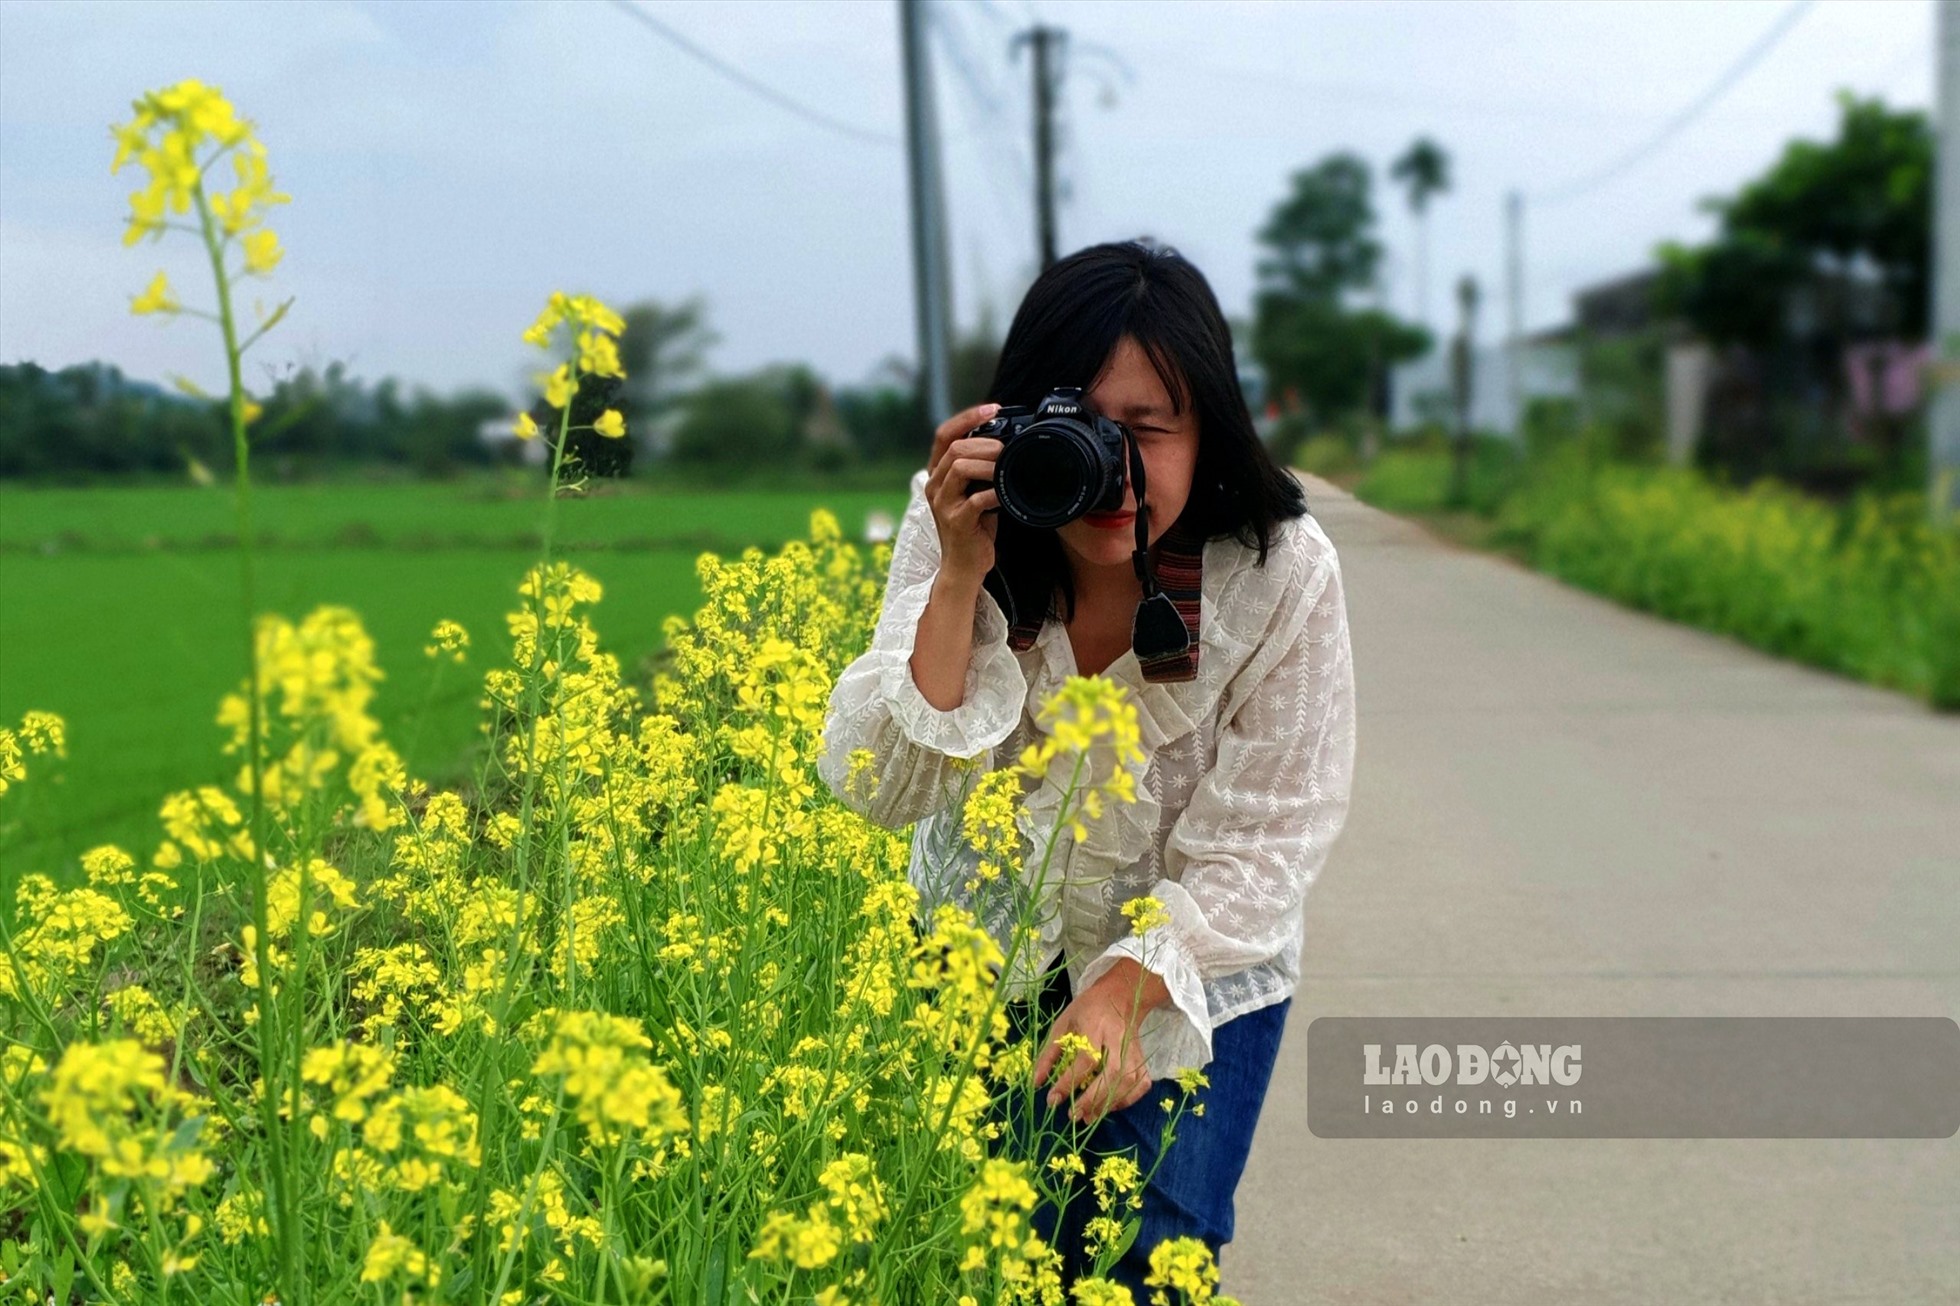 Chạy xe trên con đường làng vàng ươm màu hoa cải, nhiều du khách dừng chân để chụp ảnh hoa cải. Ảnh: Ngọc Viên